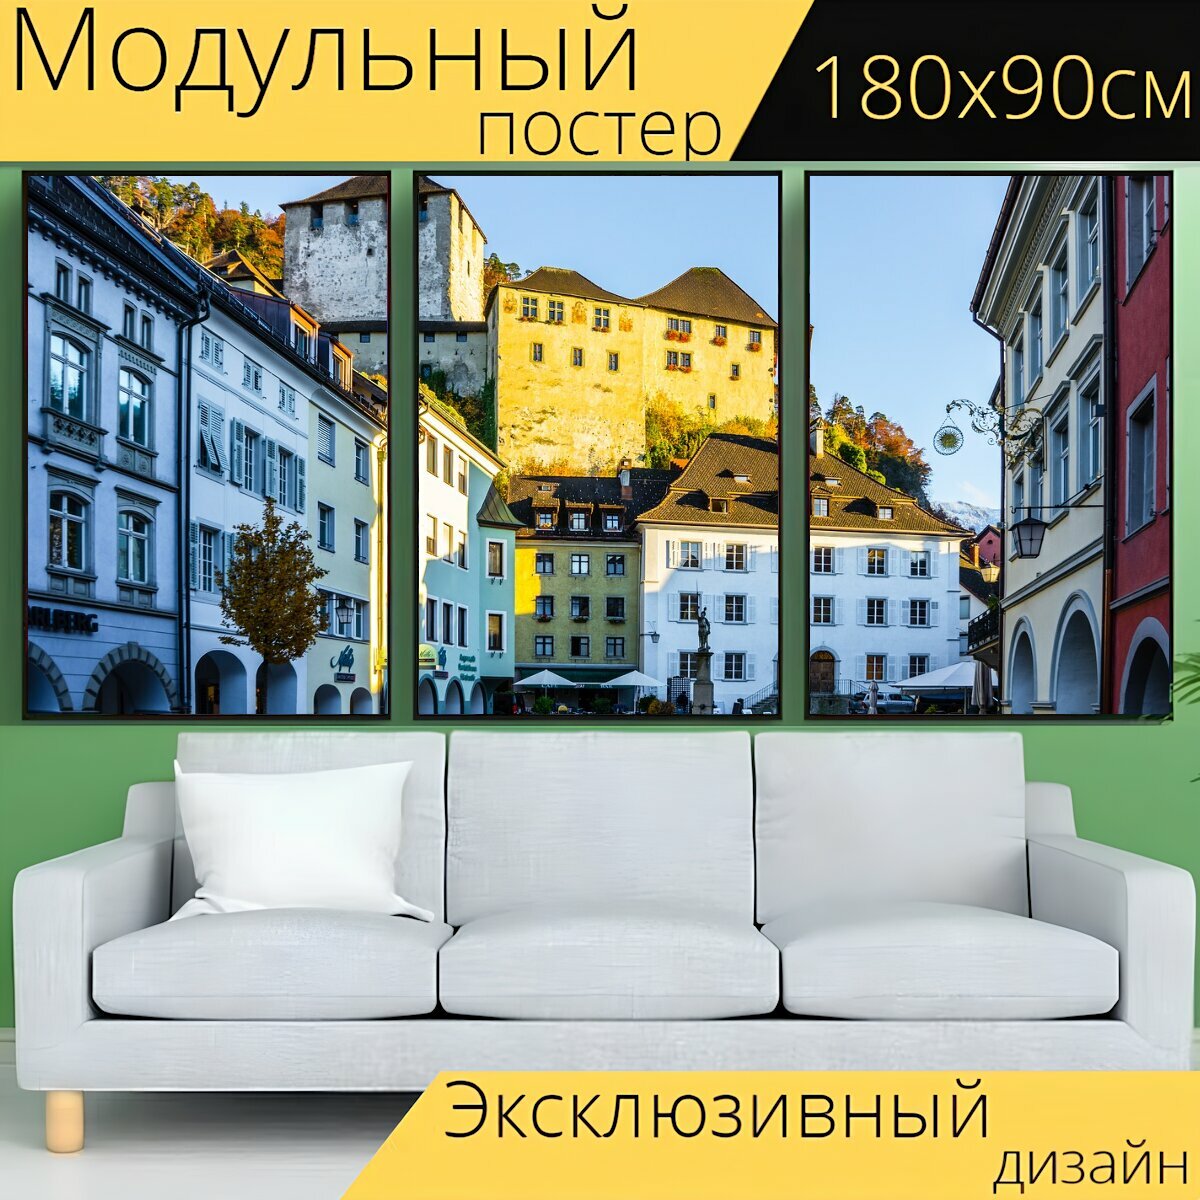 Модульный постер "Замок, здания, городок" 180 x 90 см. для интерьера